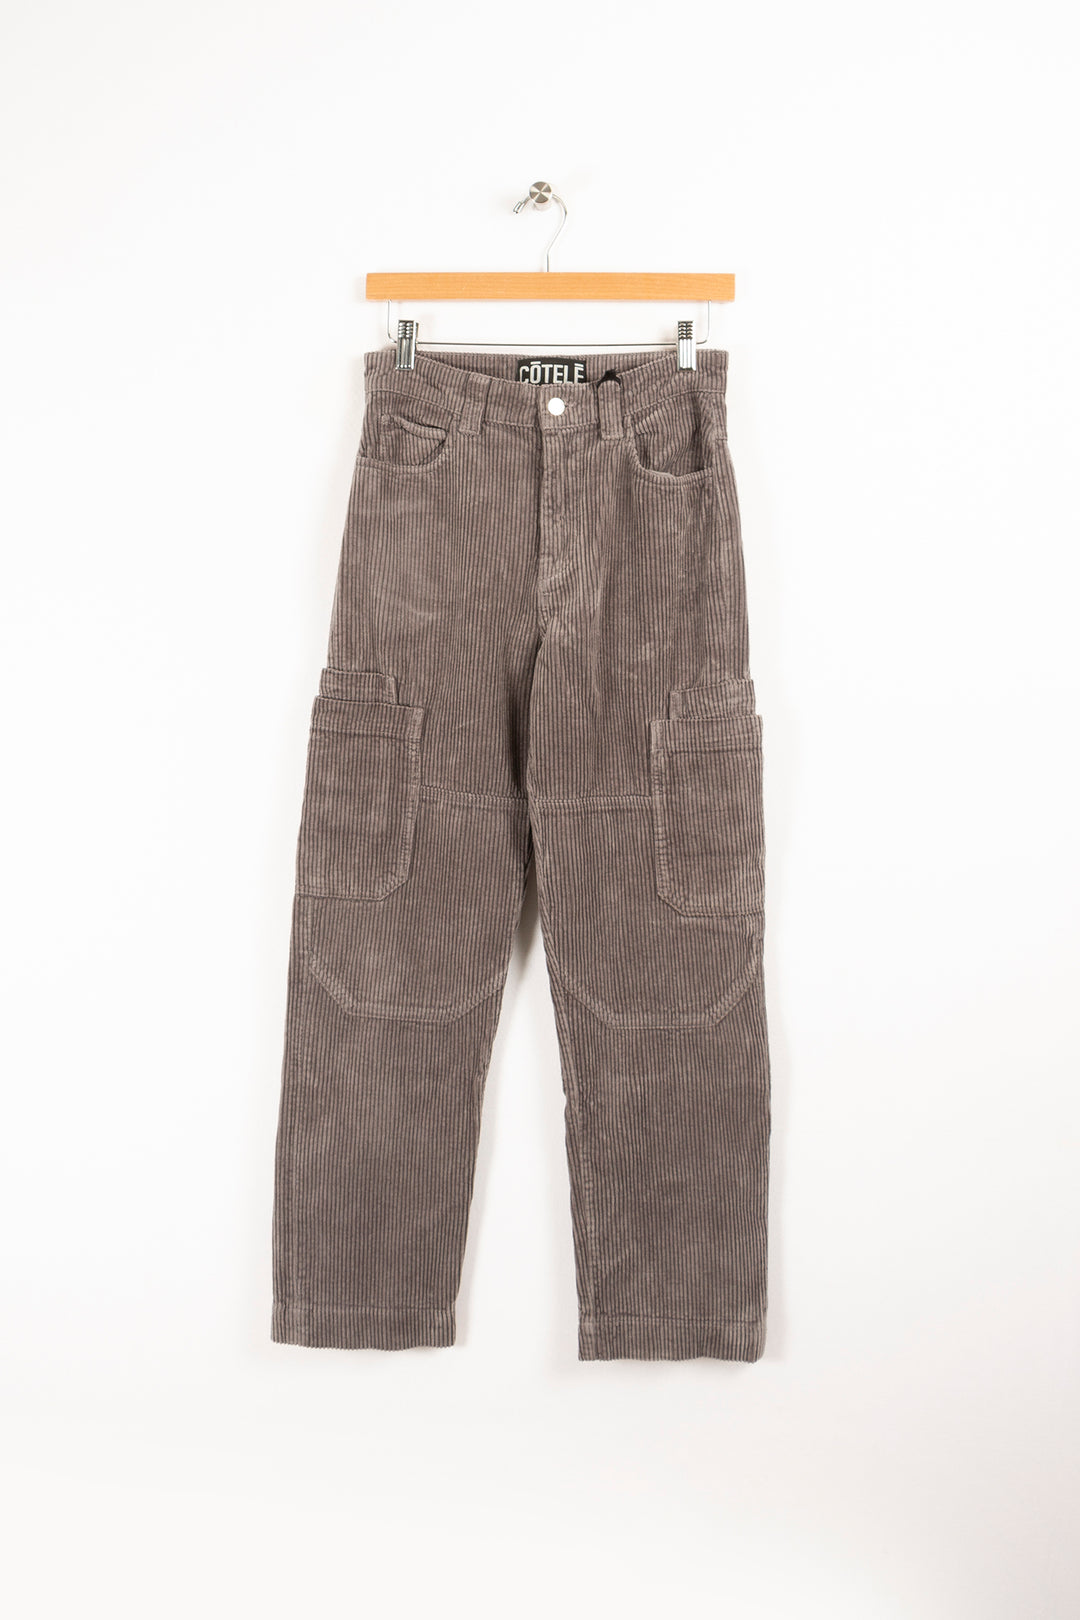 Gray cargo pants - S/36